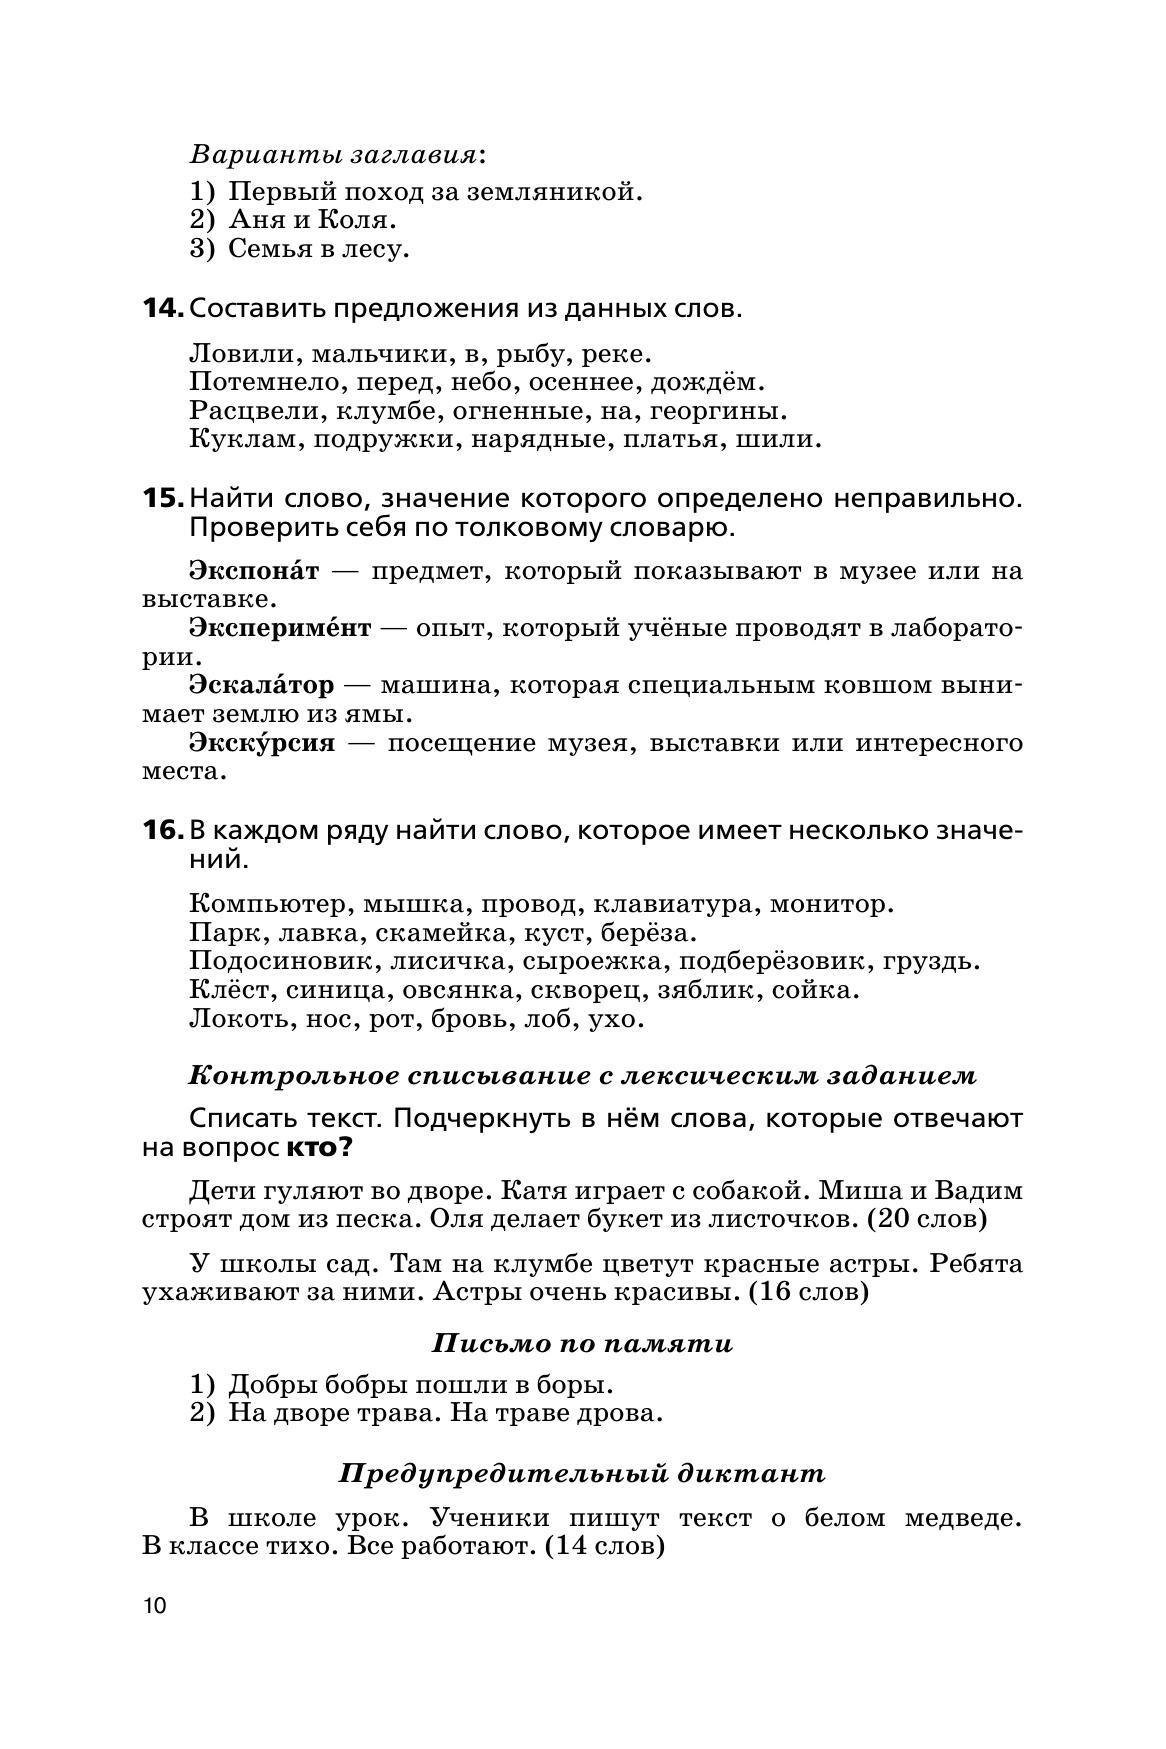 Русский язык. Сборник диктантов и творческих работ. 1-2 классы 4